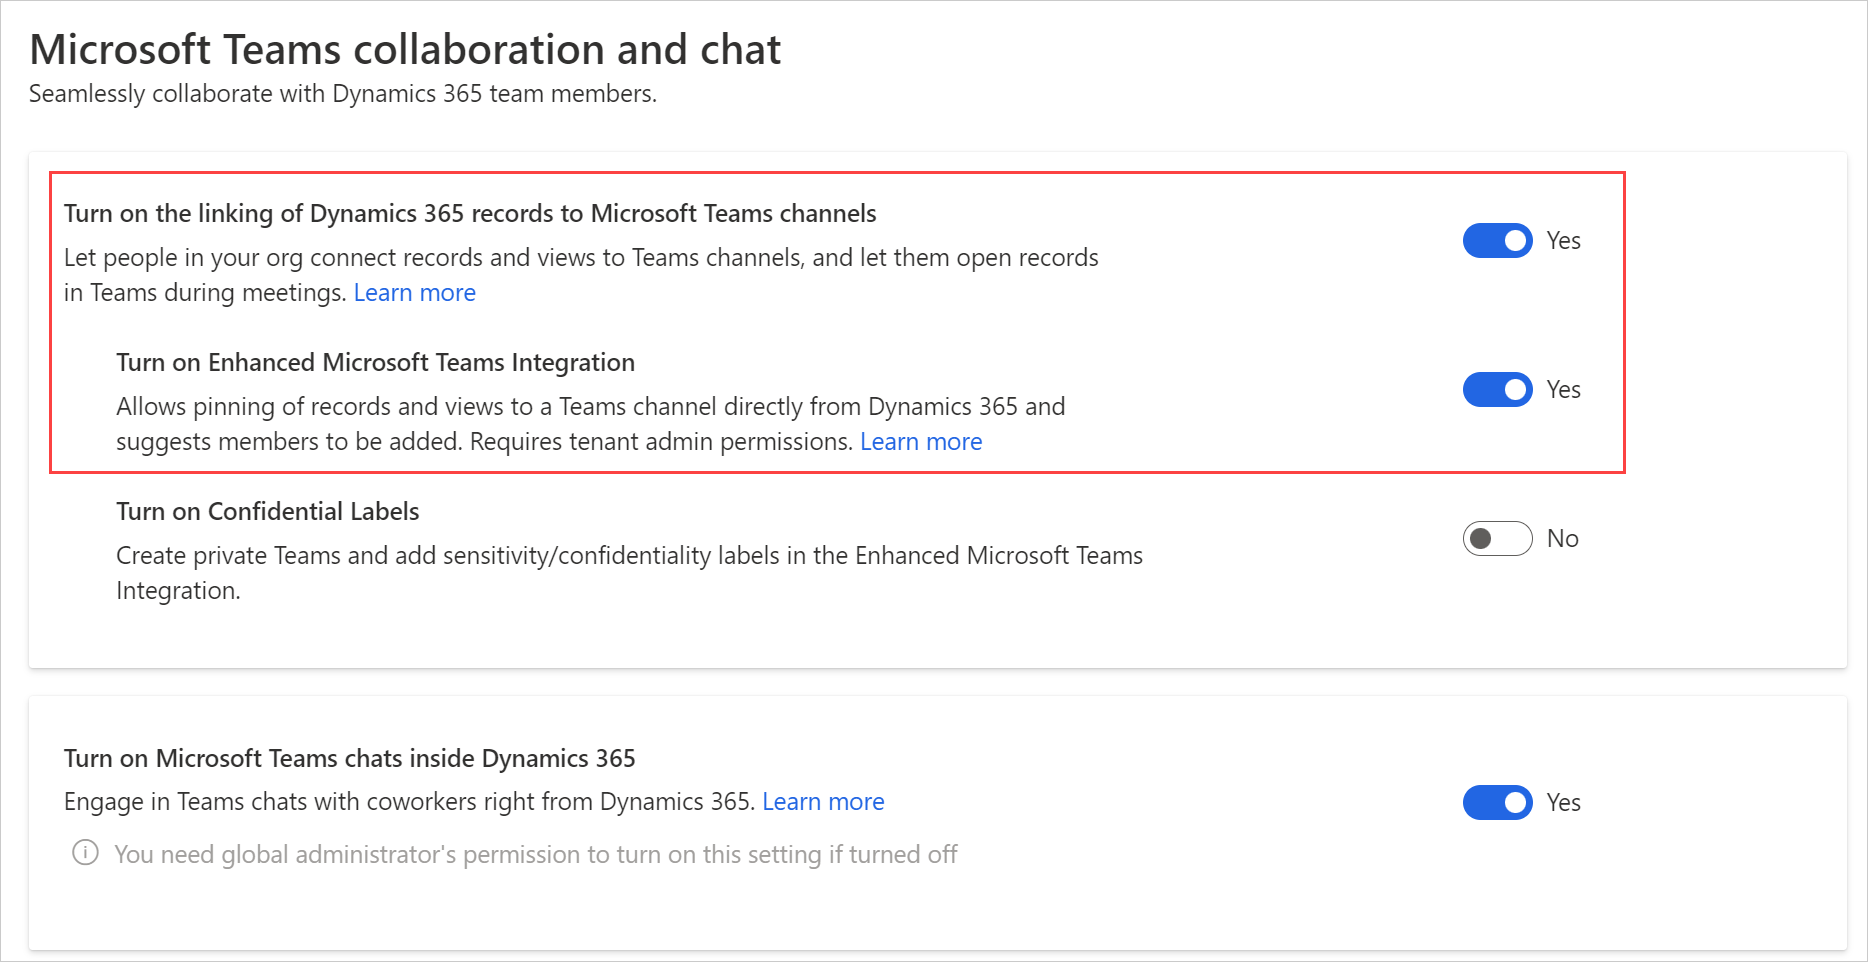 Captura de tela mostrando as configurações de colaboração e chat do Microsoft Teams.